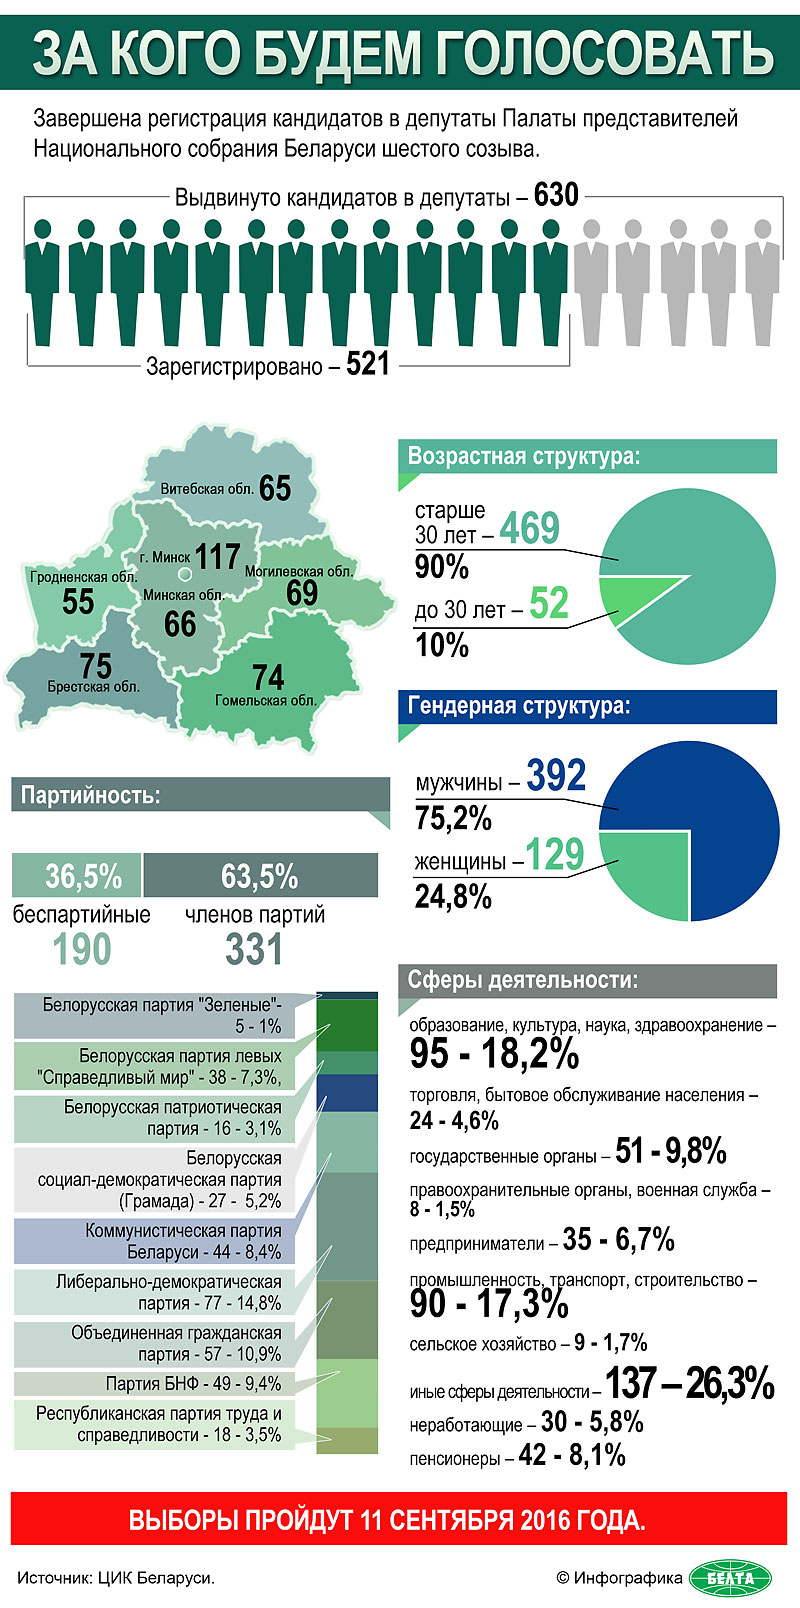 Кандидаты в депутаты Палаты представителей Национального собрания Беларуси шестого созыва